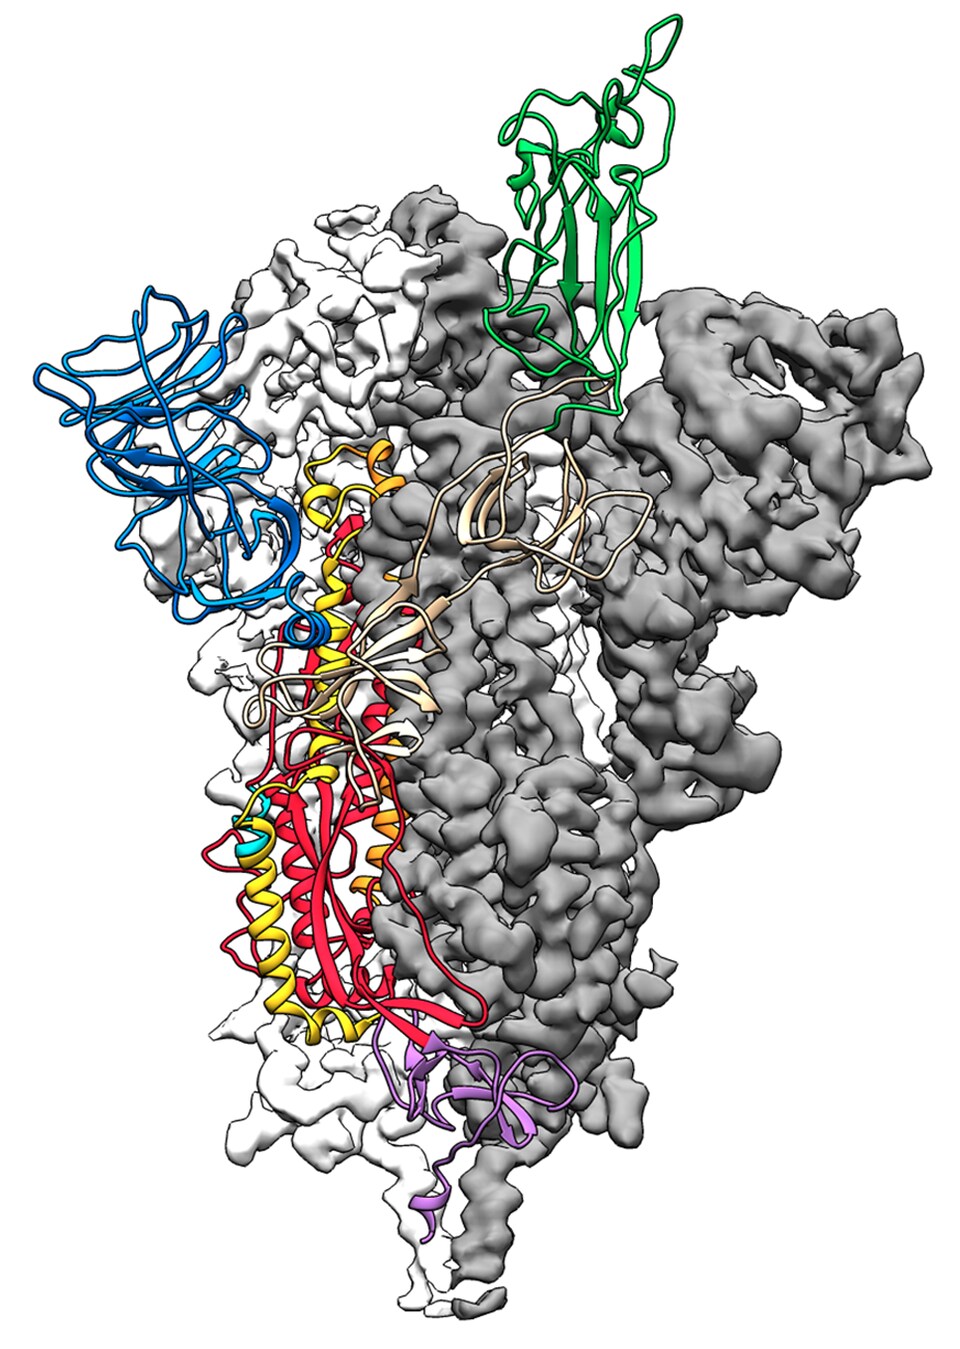 La structure moléculaire de la protéine S.